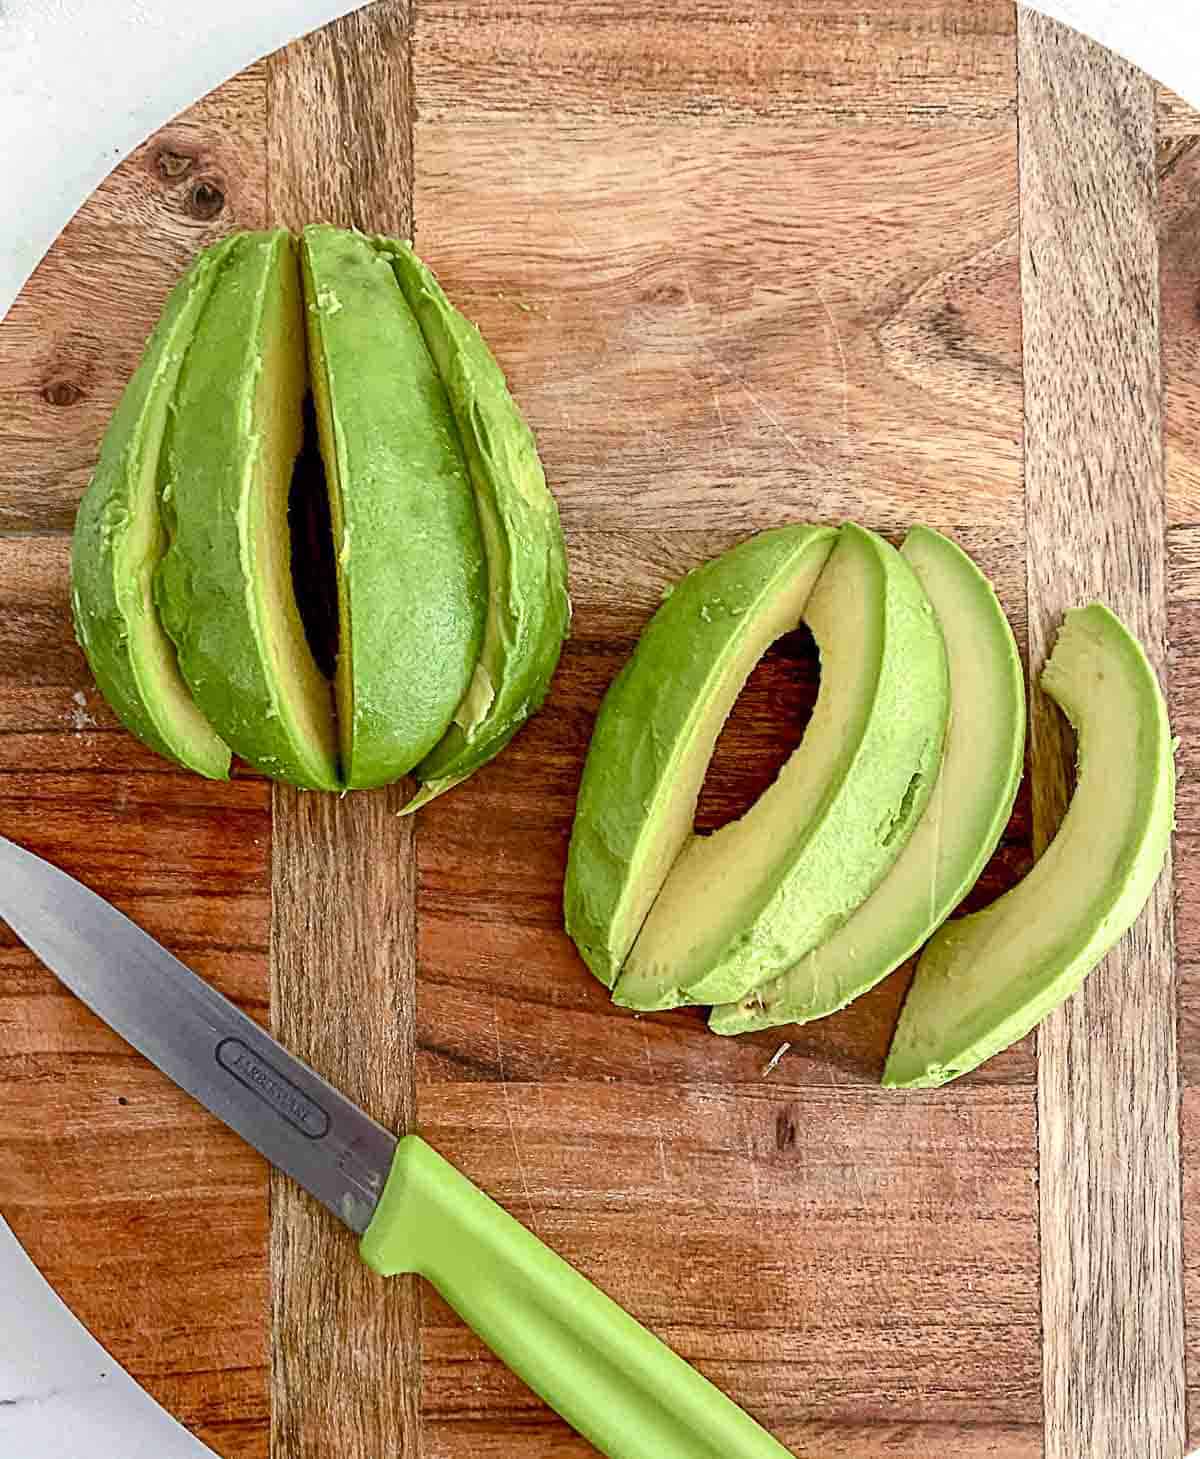 Avocado sliced on cutting board.